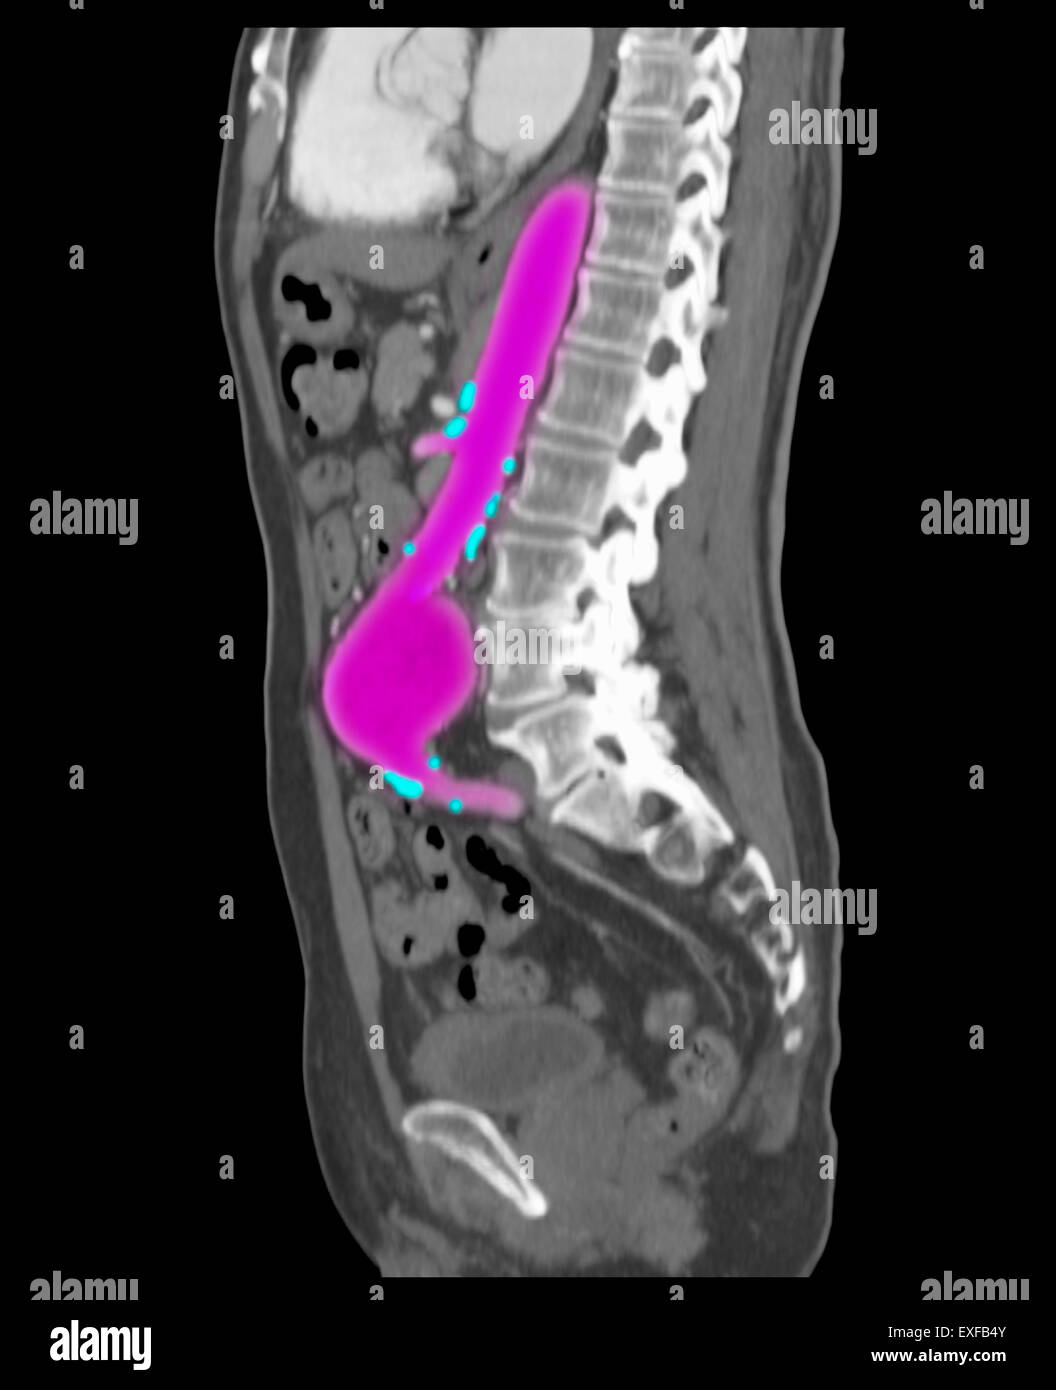 Angiografiche addominale CT scan, aneurisma aortico addominale. Le calcificazioni lungo aorta, rami, arterie aterosclerosi Foto Stock